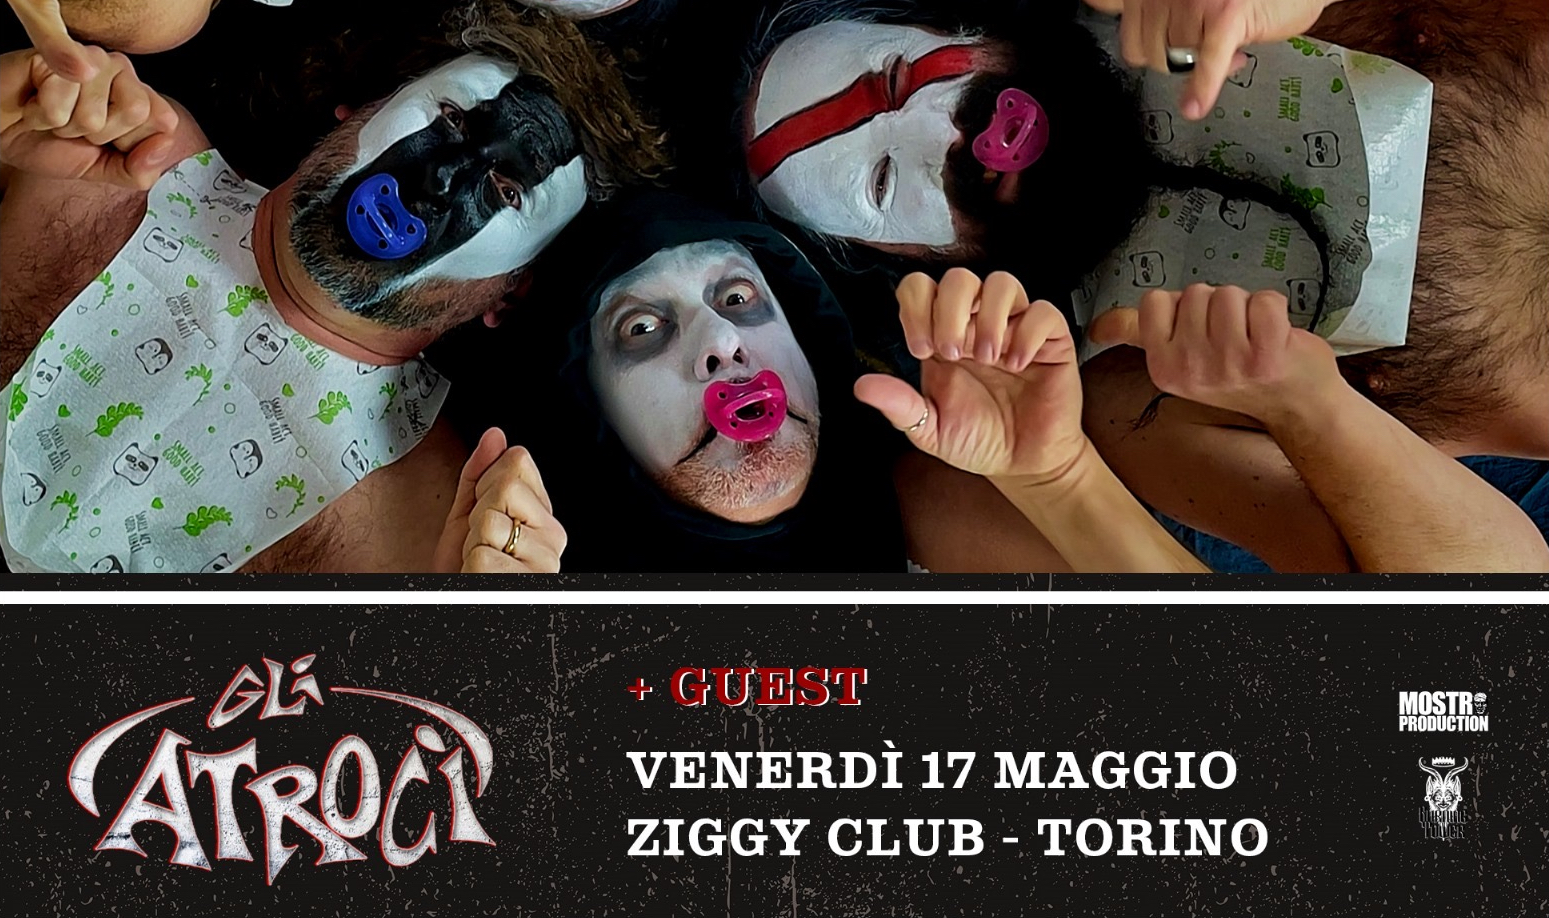 GLI ATROCI – una data allo Ziggy Club di Torino